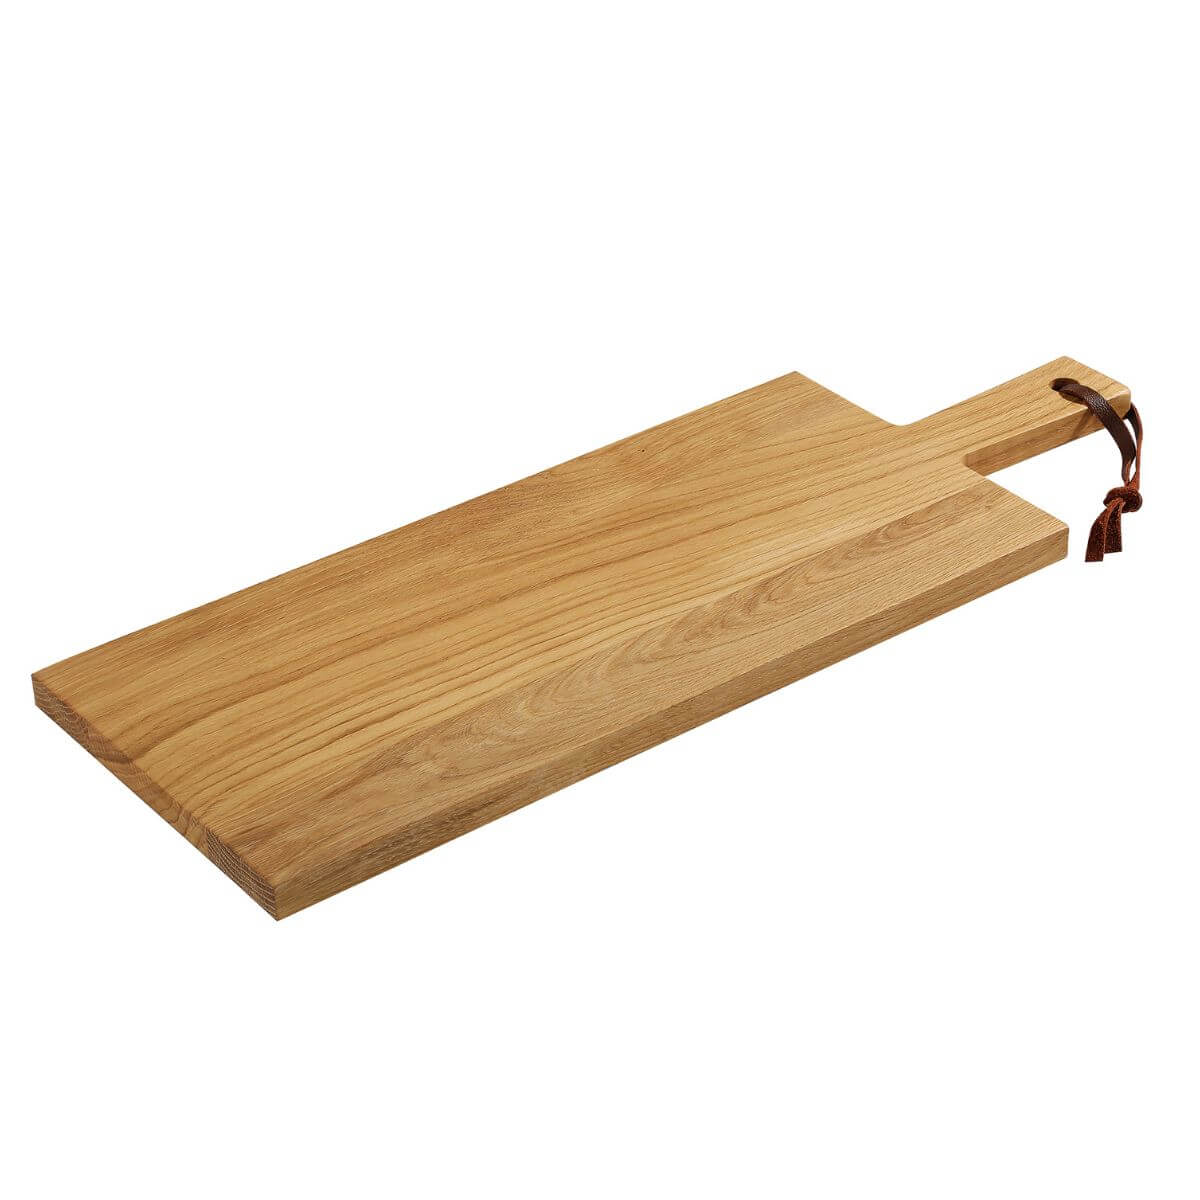 Zassenhaus Oak Serving Board 58x20.5cm